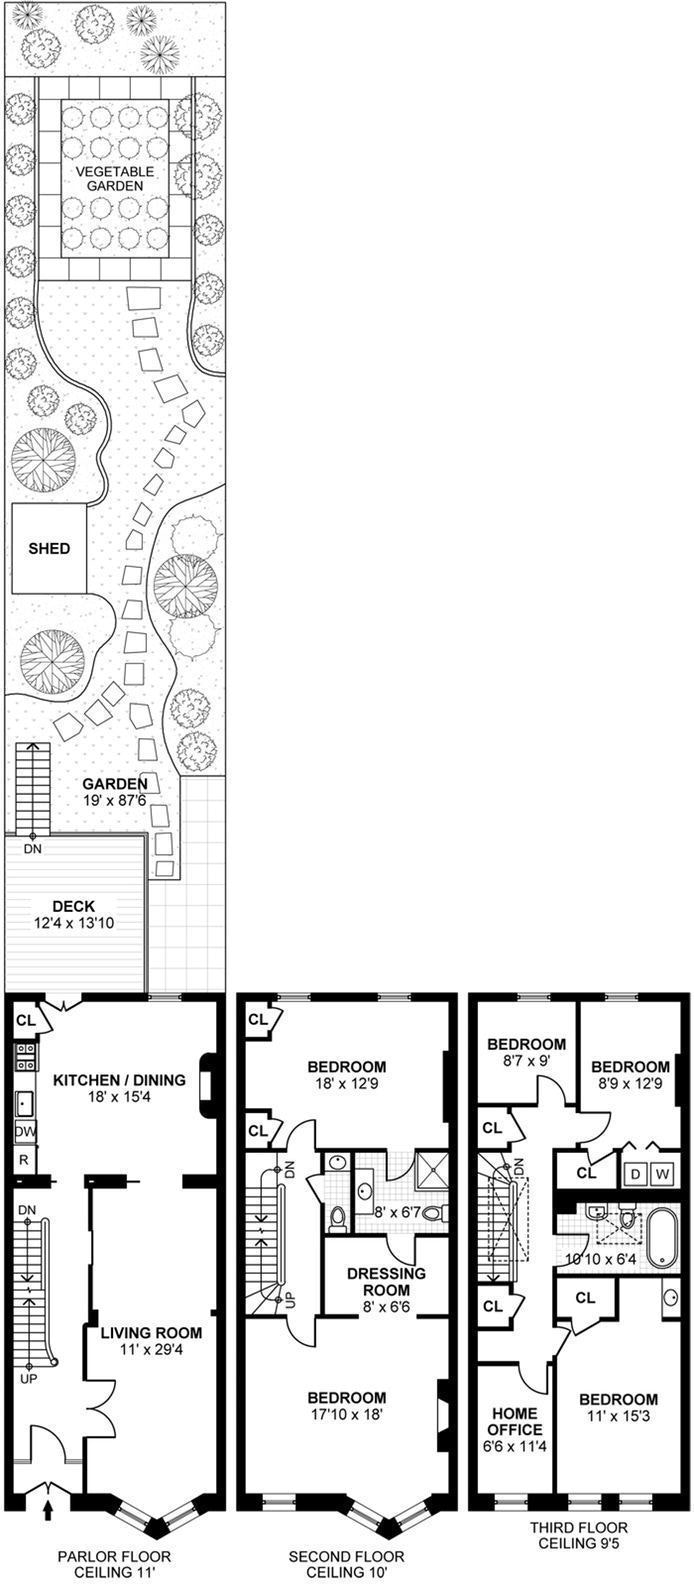 Floorplan for 744 Carroll Street, TRIPLEX